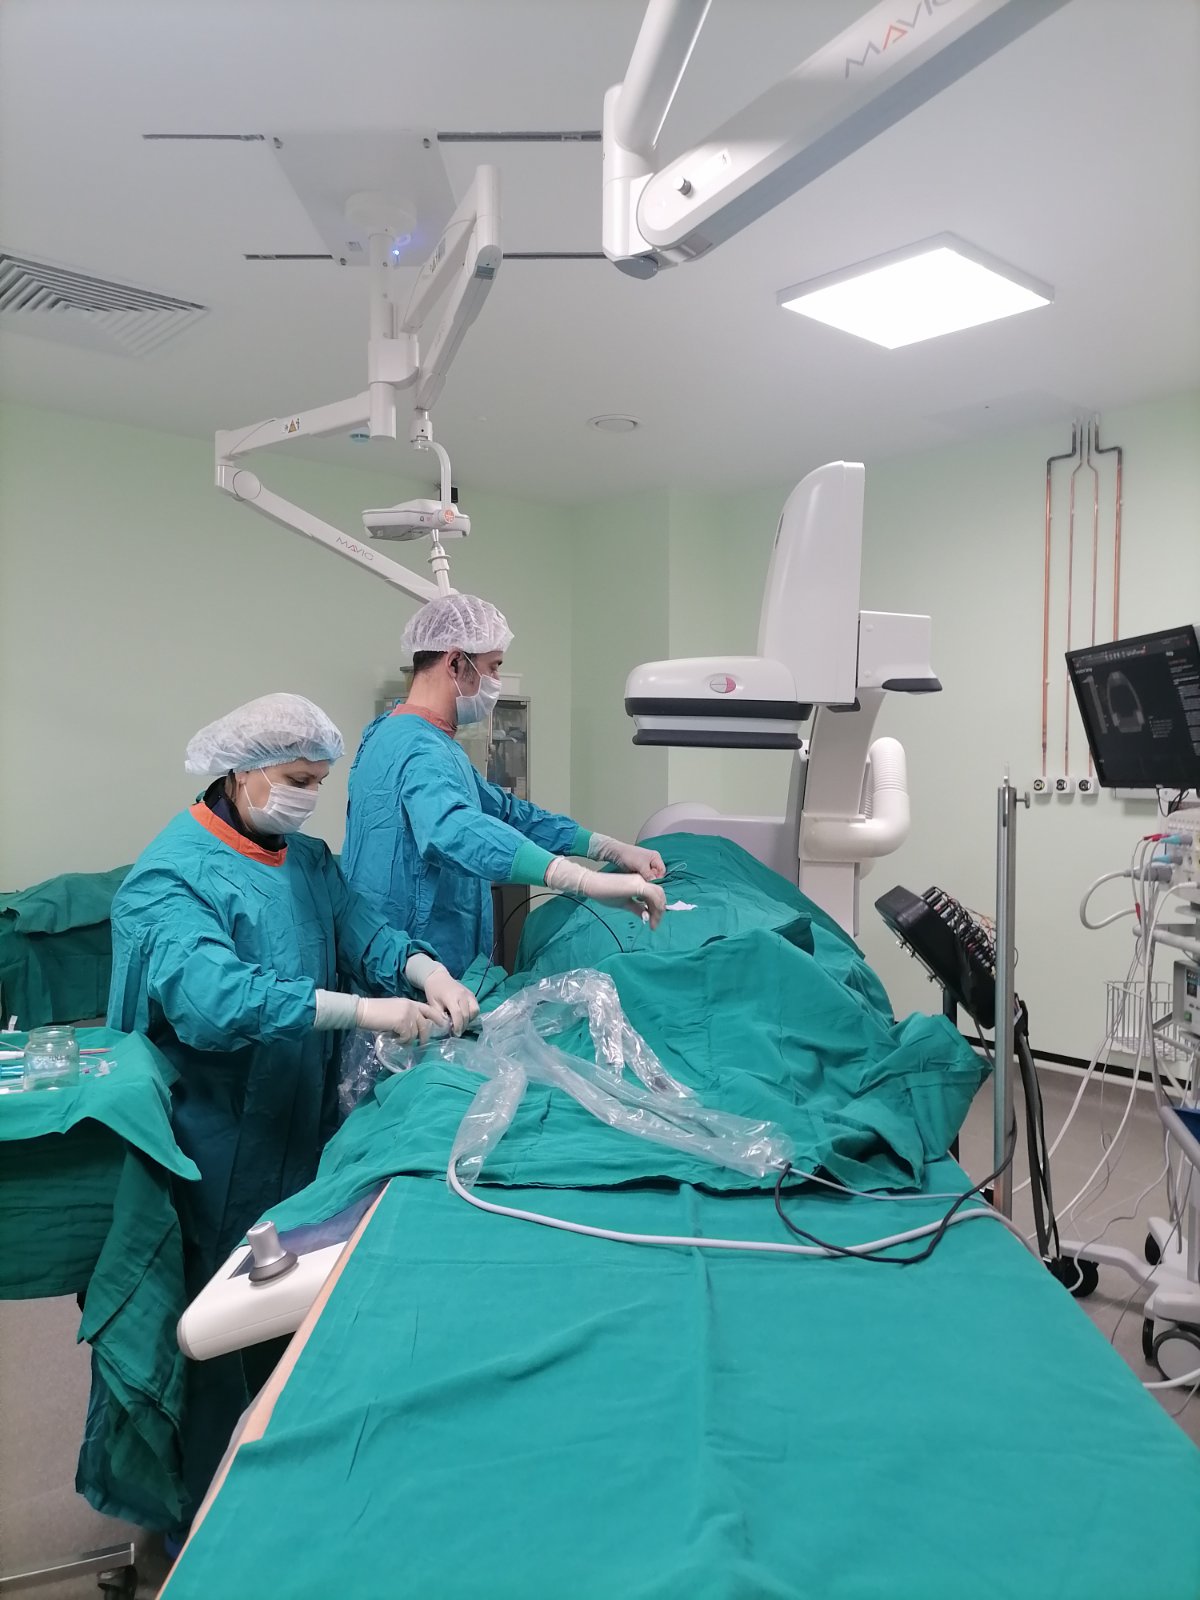 В ОКБ №1 Тюмени появилась новая операционная для лечения пациентов с нарушением ритма сердца